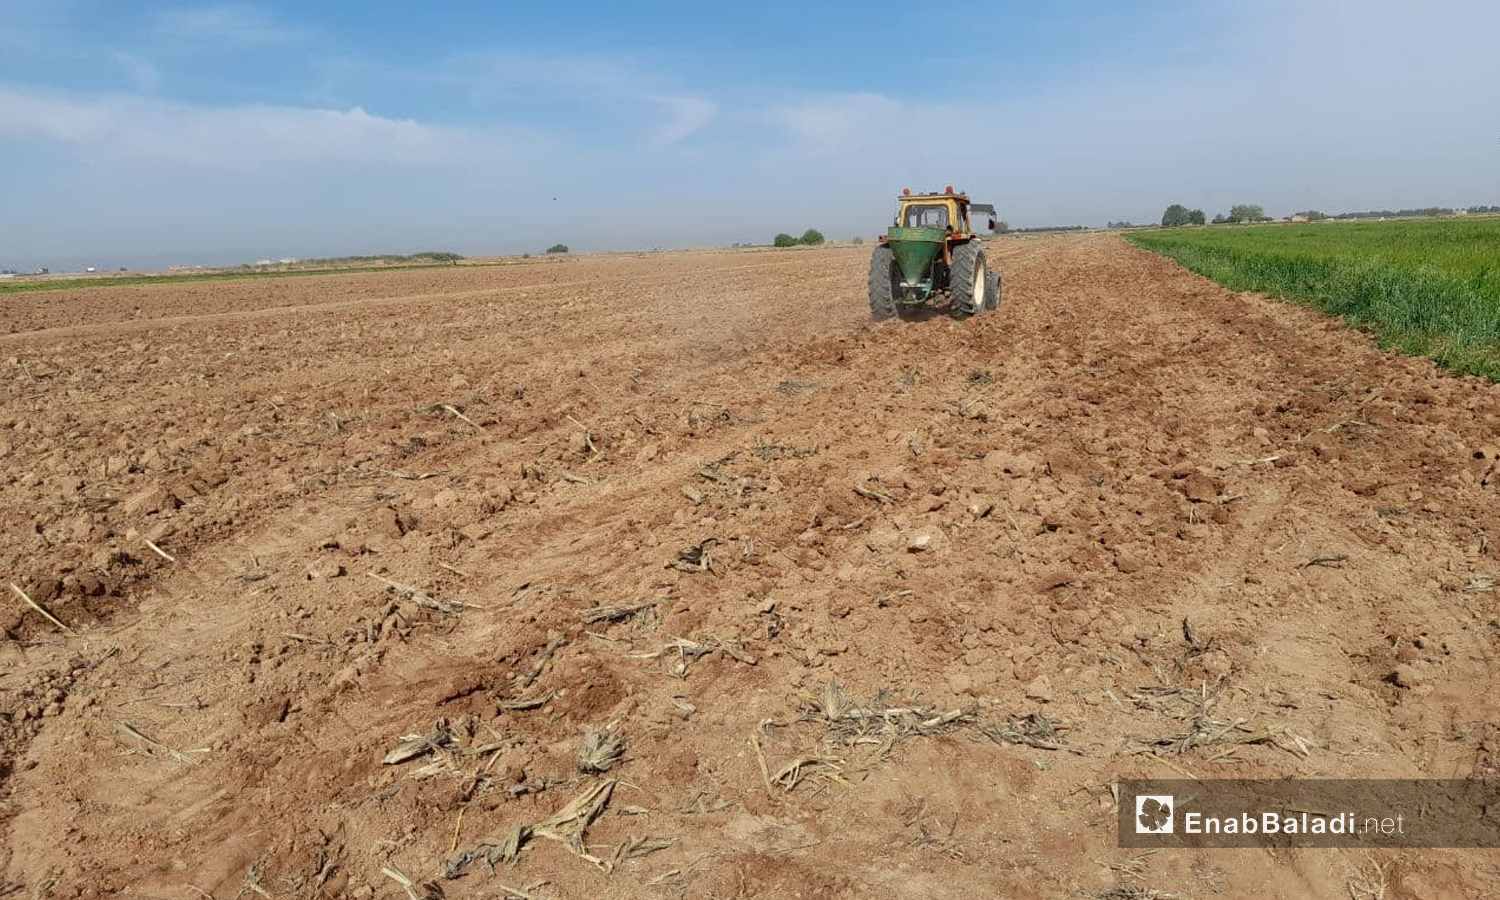 جرار يحرث أرض زراعية في ريف الرقة الشرقي- 3 من أيار 2021 (عنب بلدي)